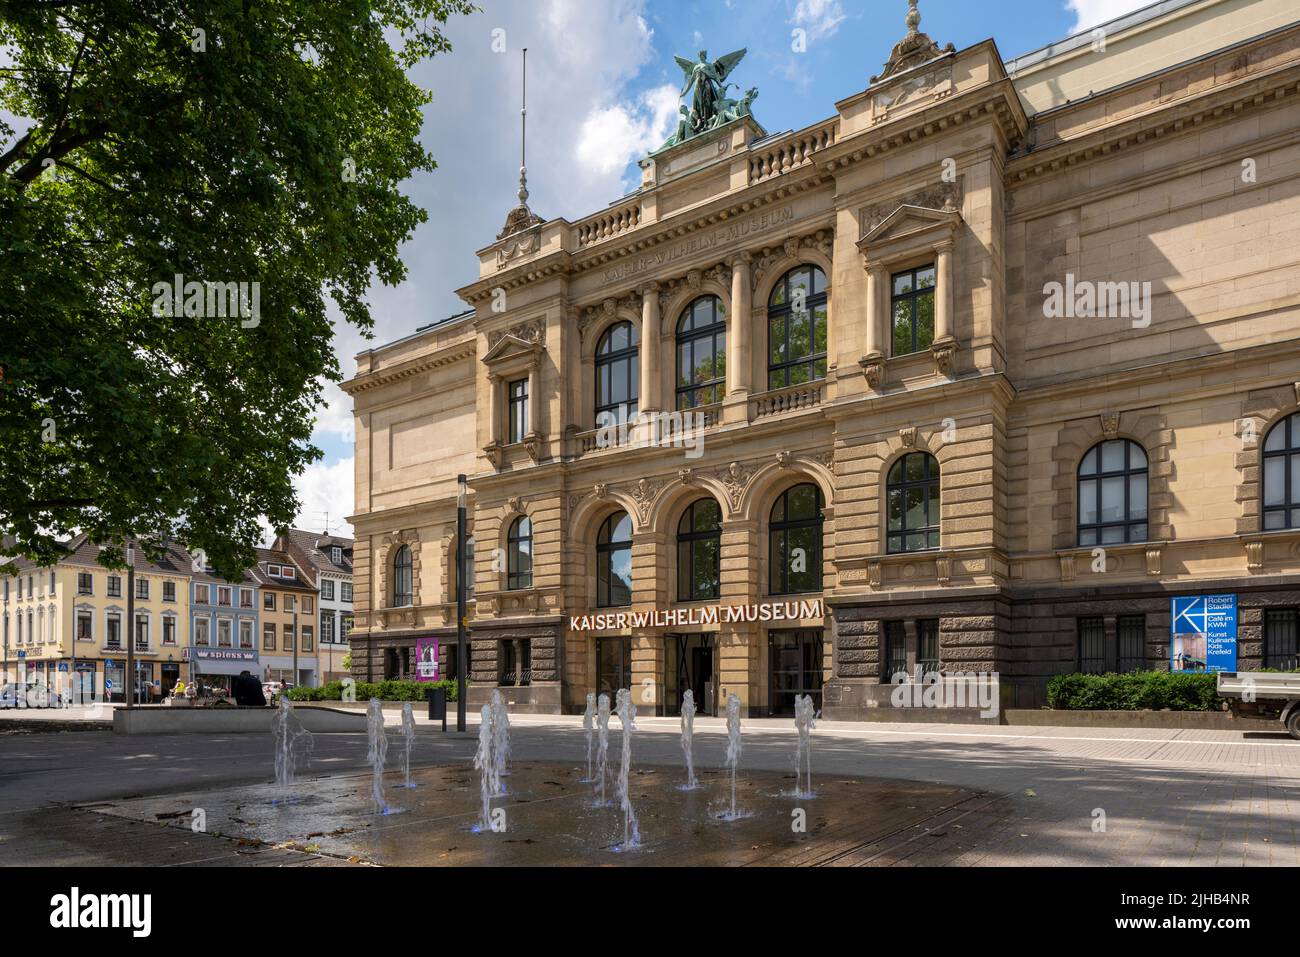 Krefeld, Museo Kaiser Wilhelm, 1894−1897 von Hugo Koch erbaut,Erweiterung 1905−1912 Eingangsfassade nach Neugestaltung des Joseph-Beuys-Platz Foto de stock